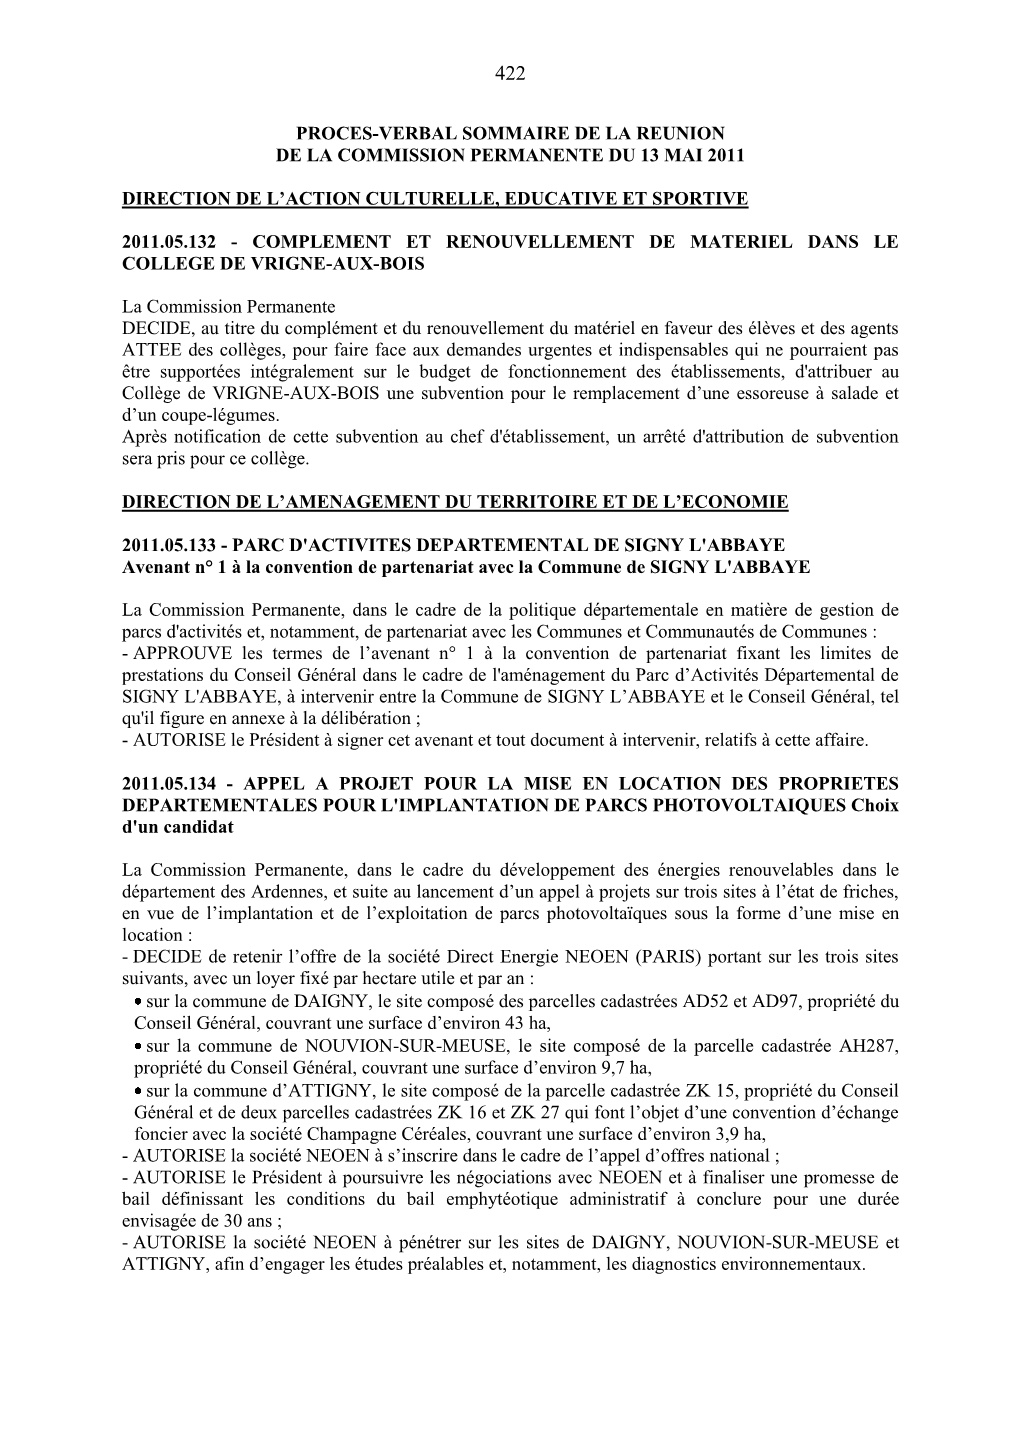 Proces-Verbal Sommaire De La Reunion De La Commission Permanente Du 13 Mai 2011